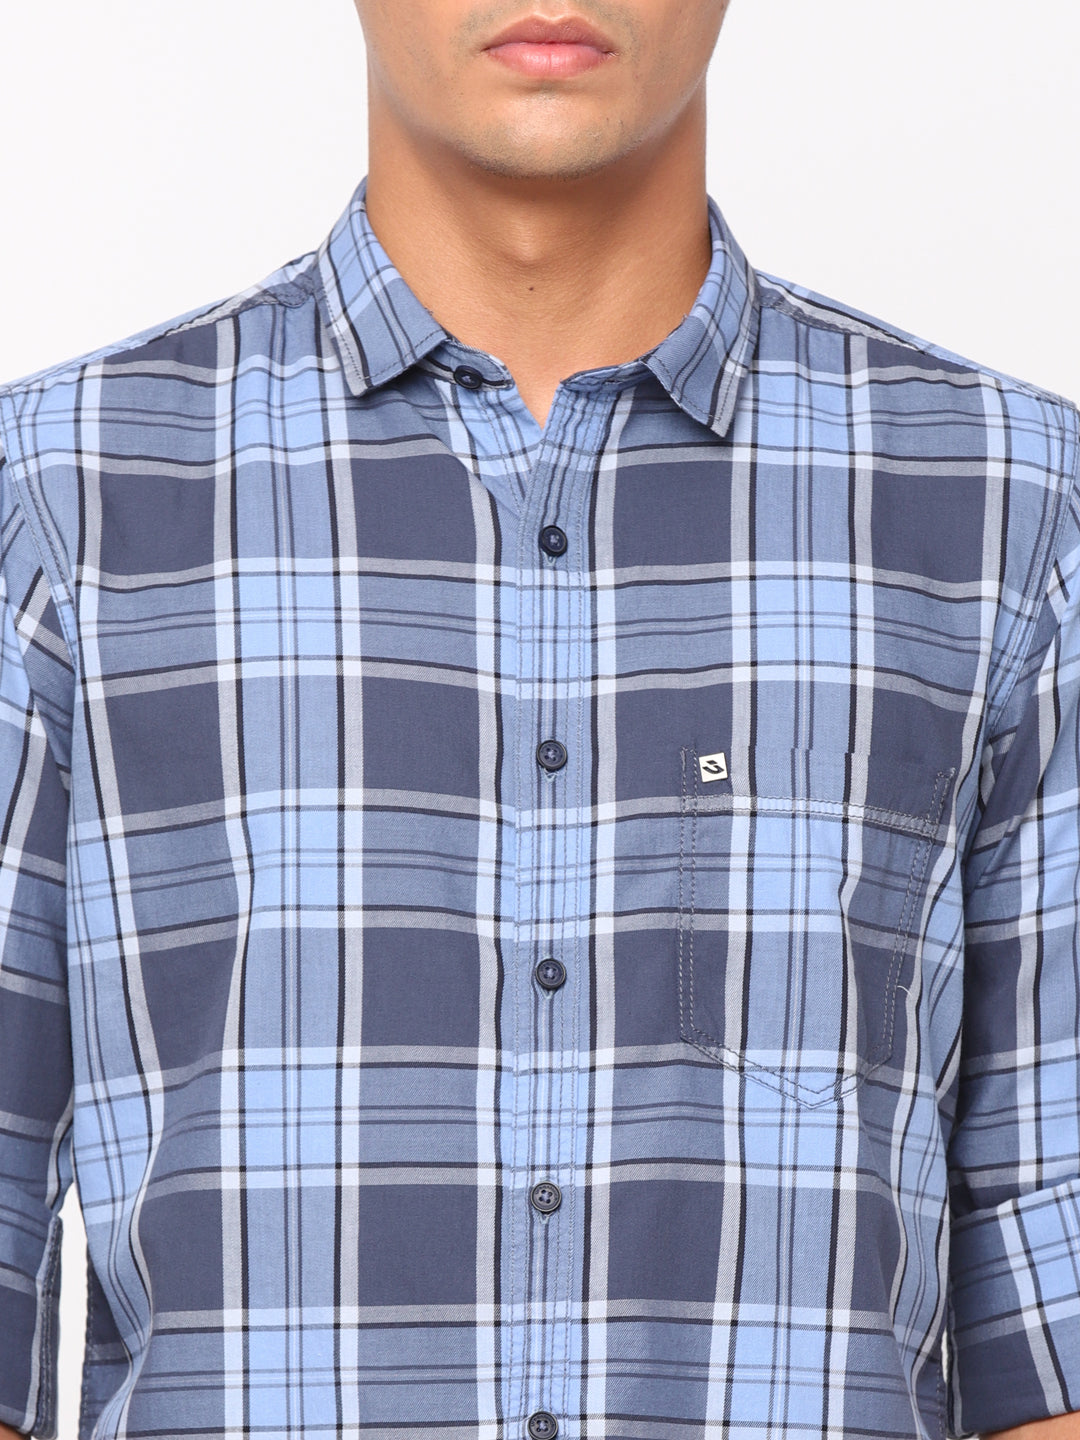 Blue Checkerd Shirt